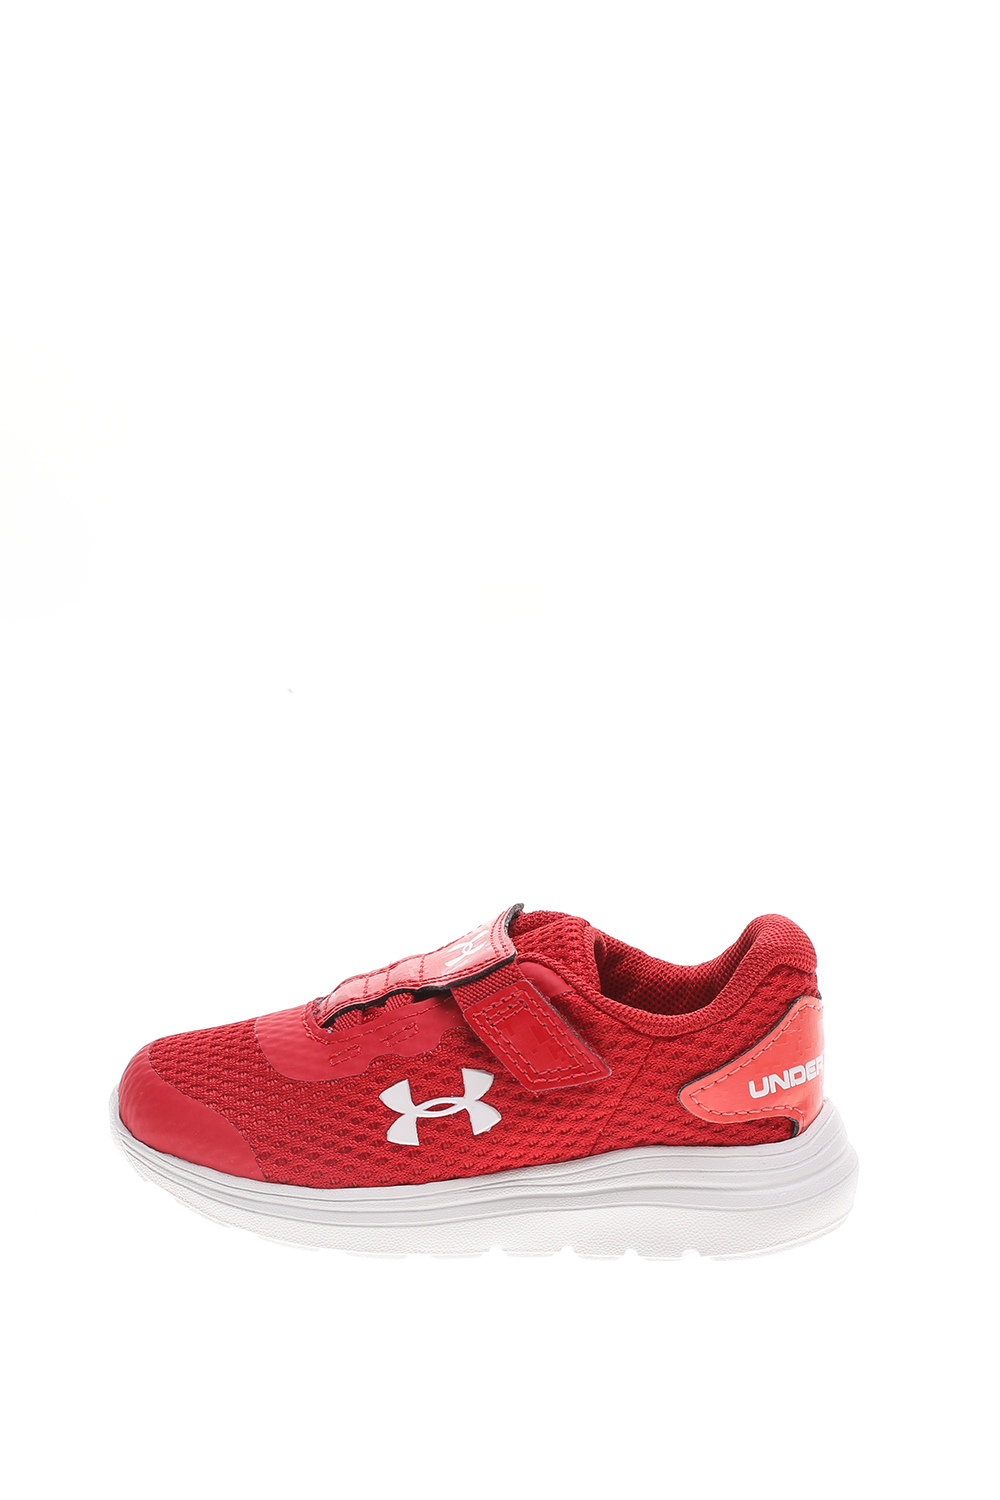 Παιδικά/Boys/Παπούτσια/Αθλητικά UNDER ARMOUR - Παιδικά αθλητικά παπούτσια UNDER ARMOUR Inf Surge 2 AC κόκκινα